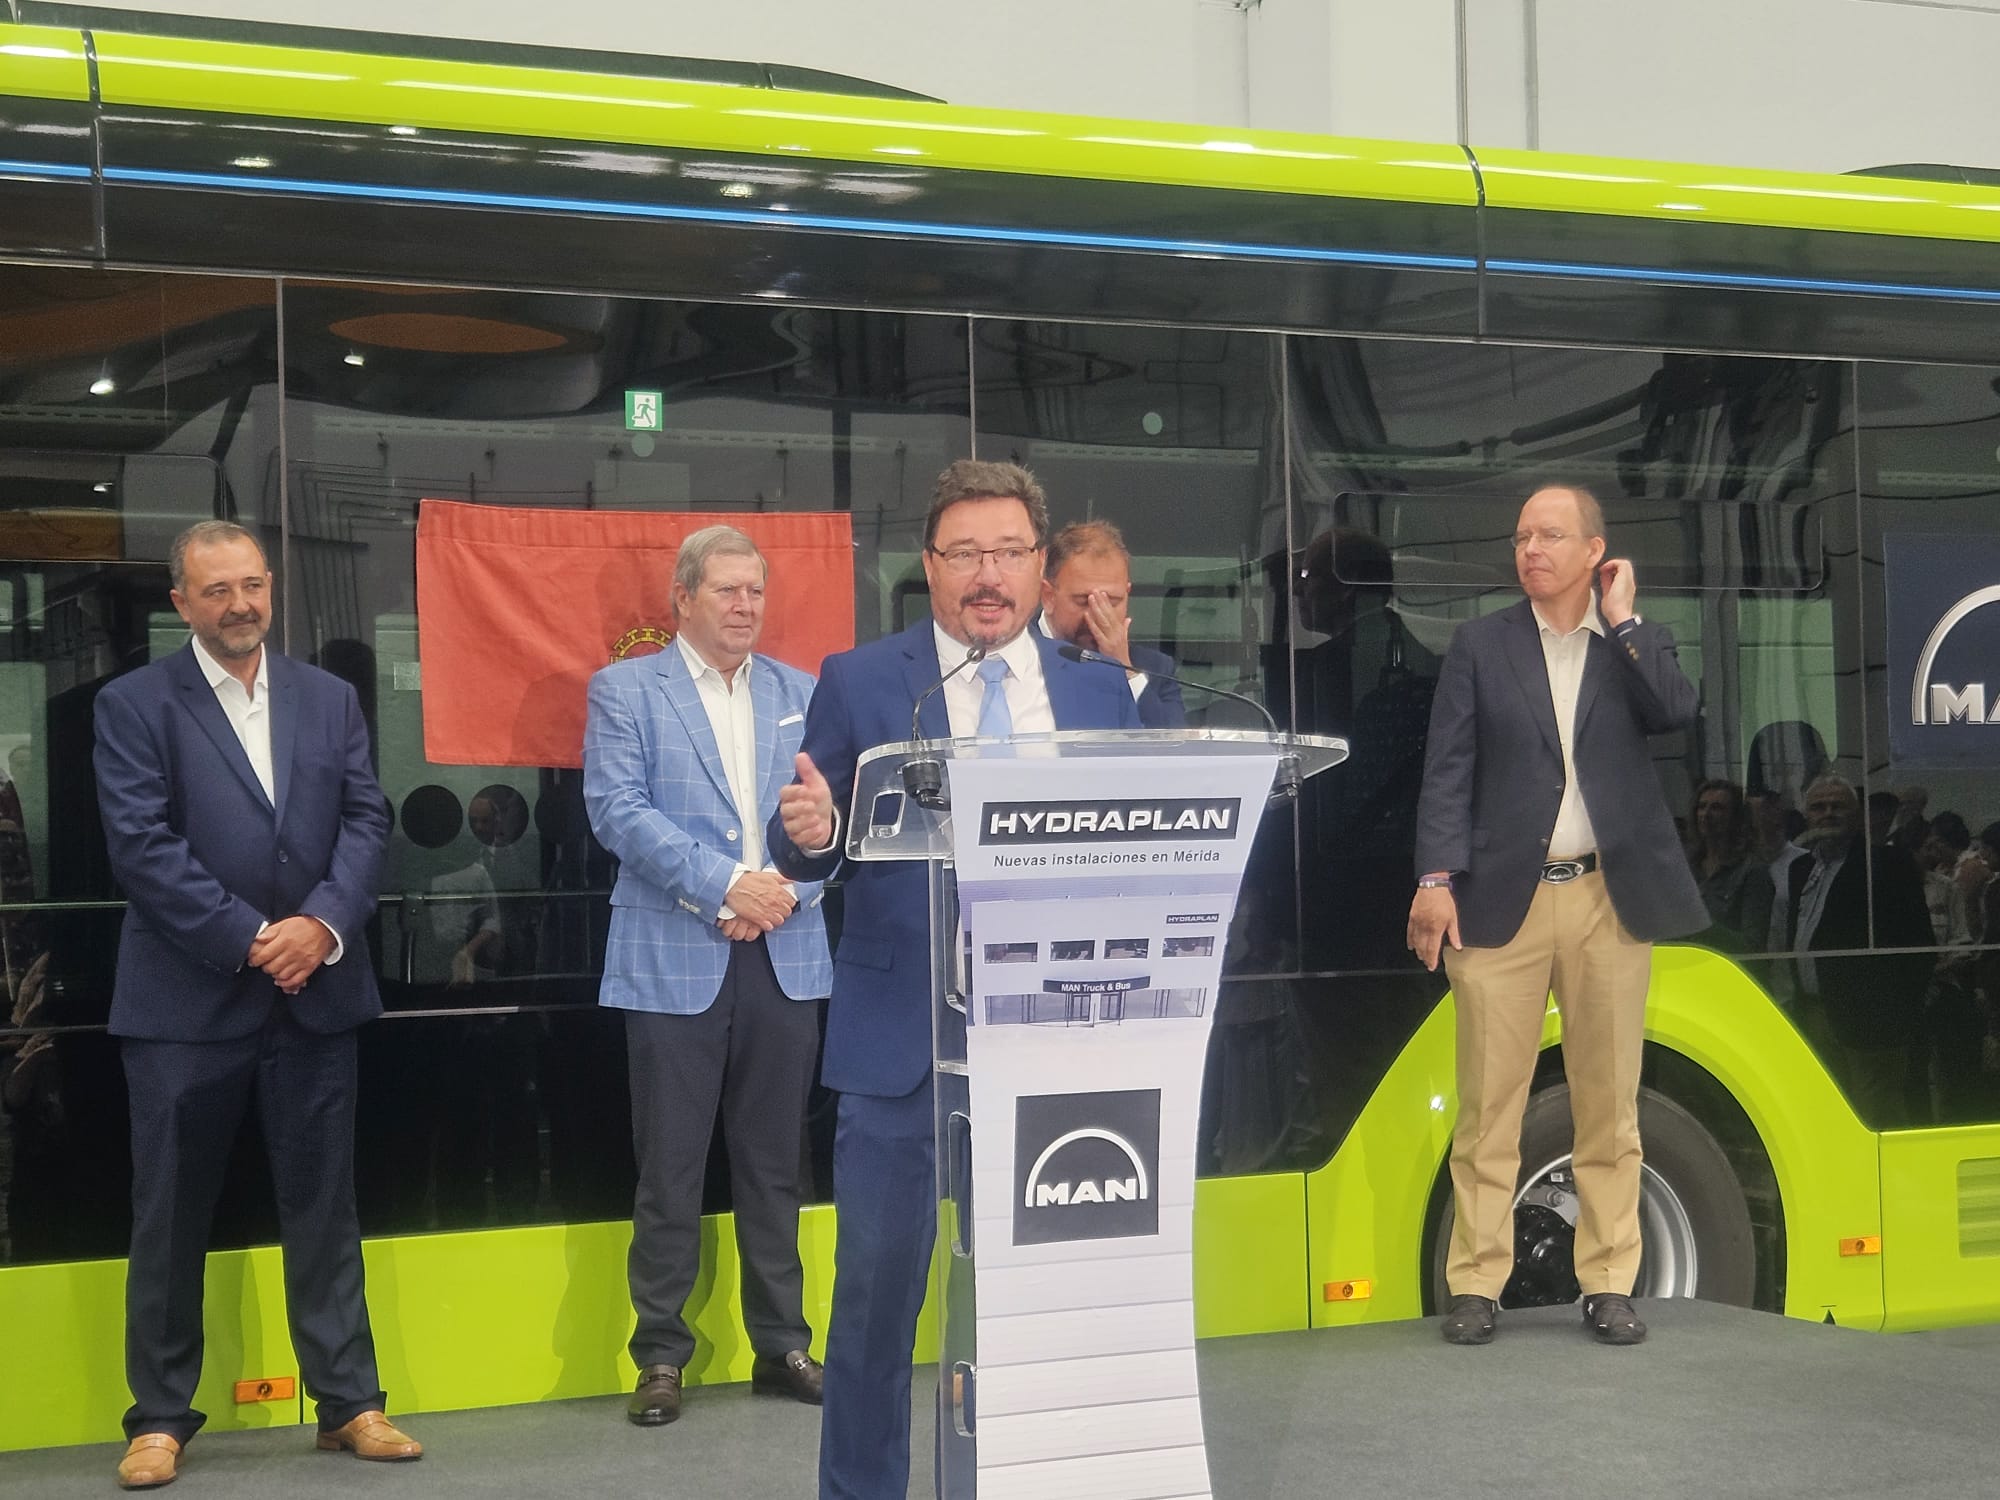 Image 2 of article El consejero Santamaría inaugura las nuevas instalaciones de la empresa Hydraplan, Man Truck & Bus en Mérida que han pasado de 3.000 a 15.000 metros cuadrados